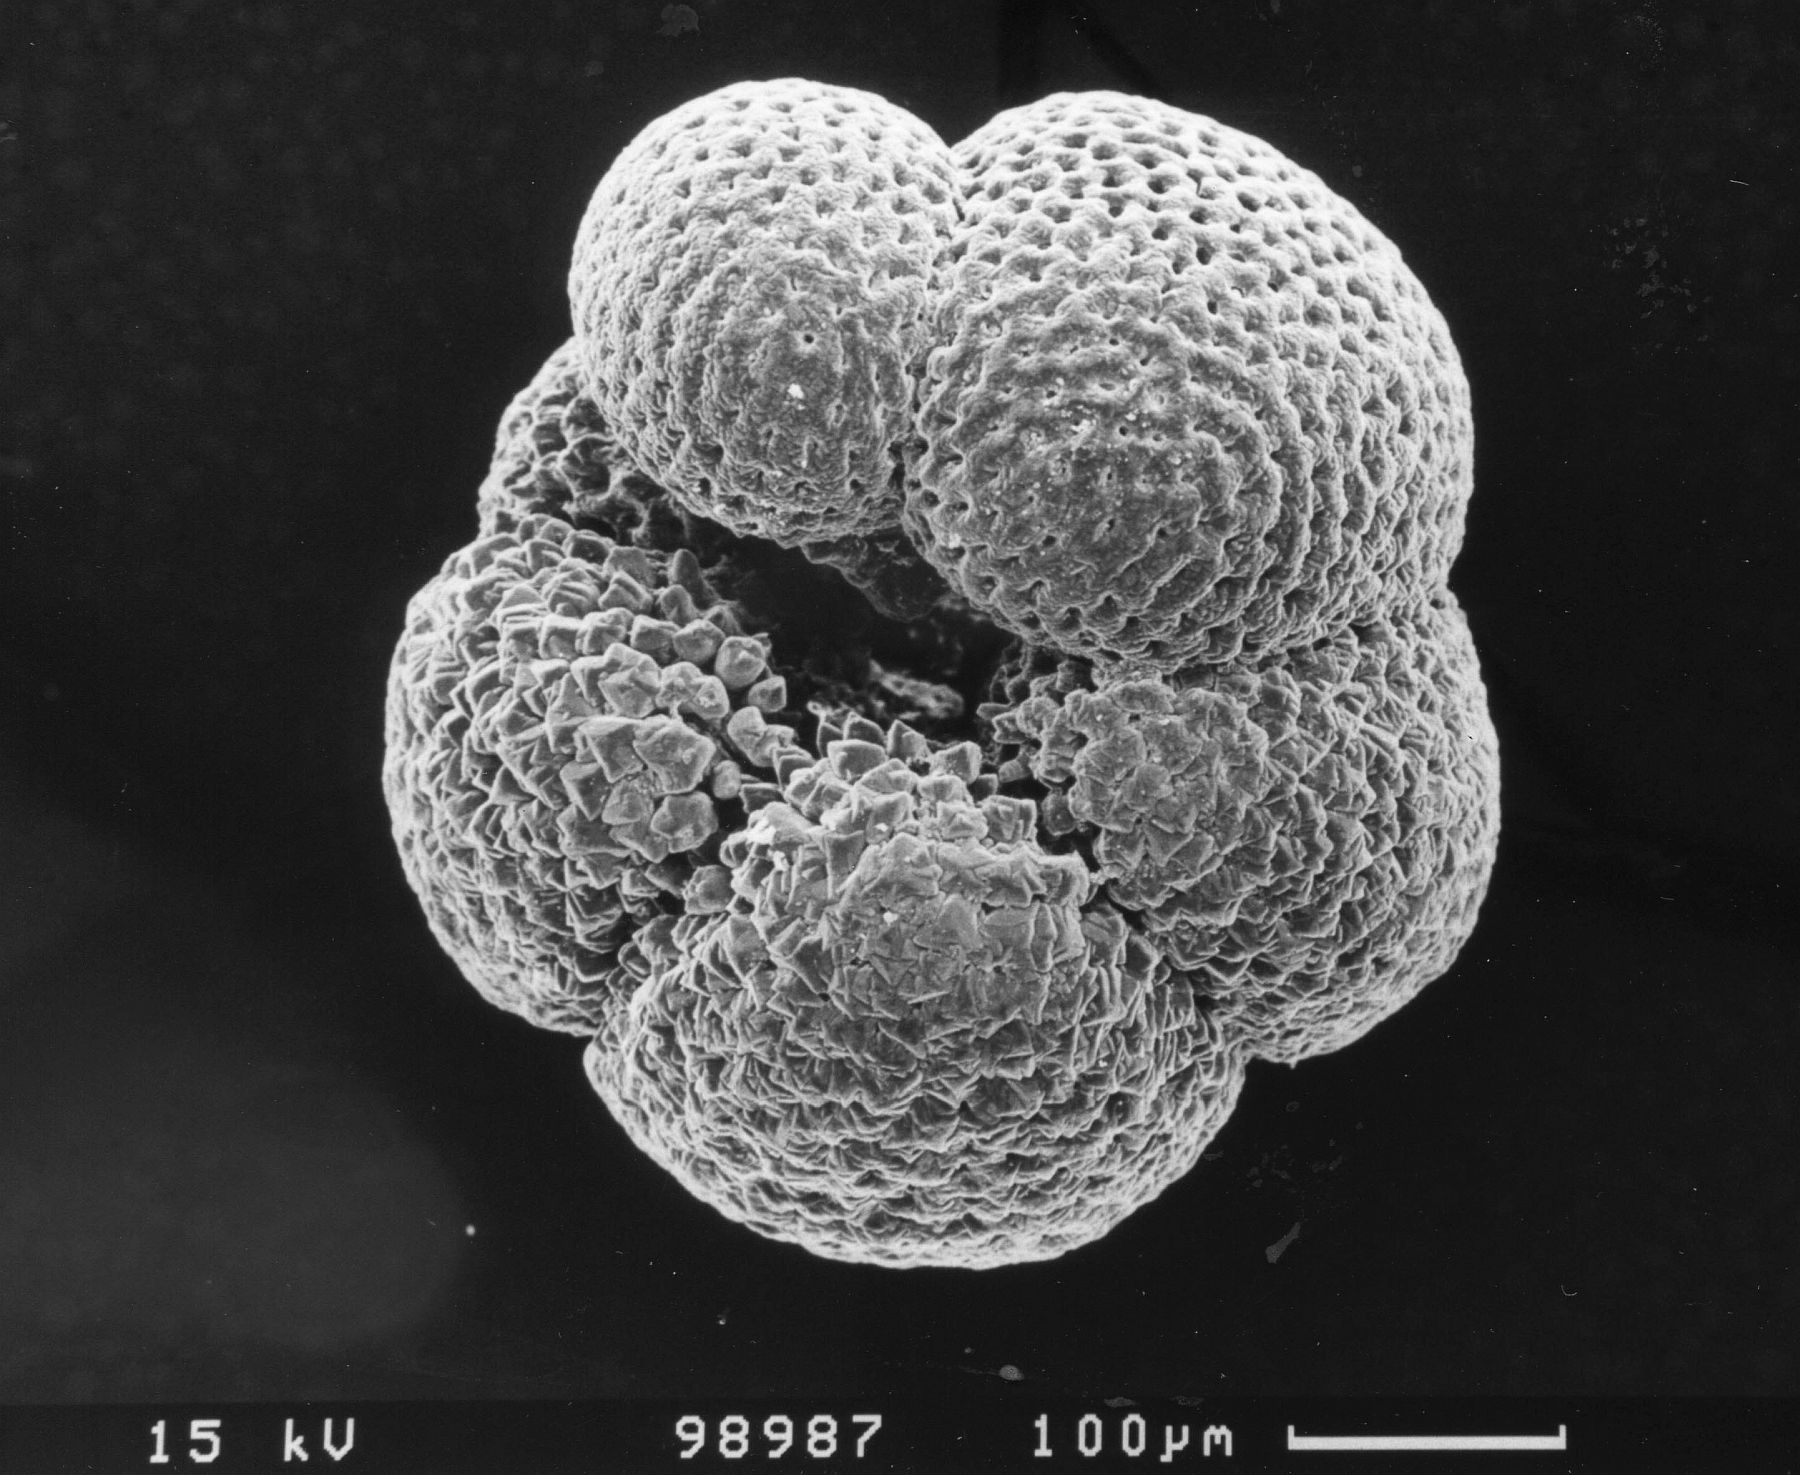 Planktisch lebender Einzeller (Foraminifere) aus den ozeanischen Schlammablagerungen